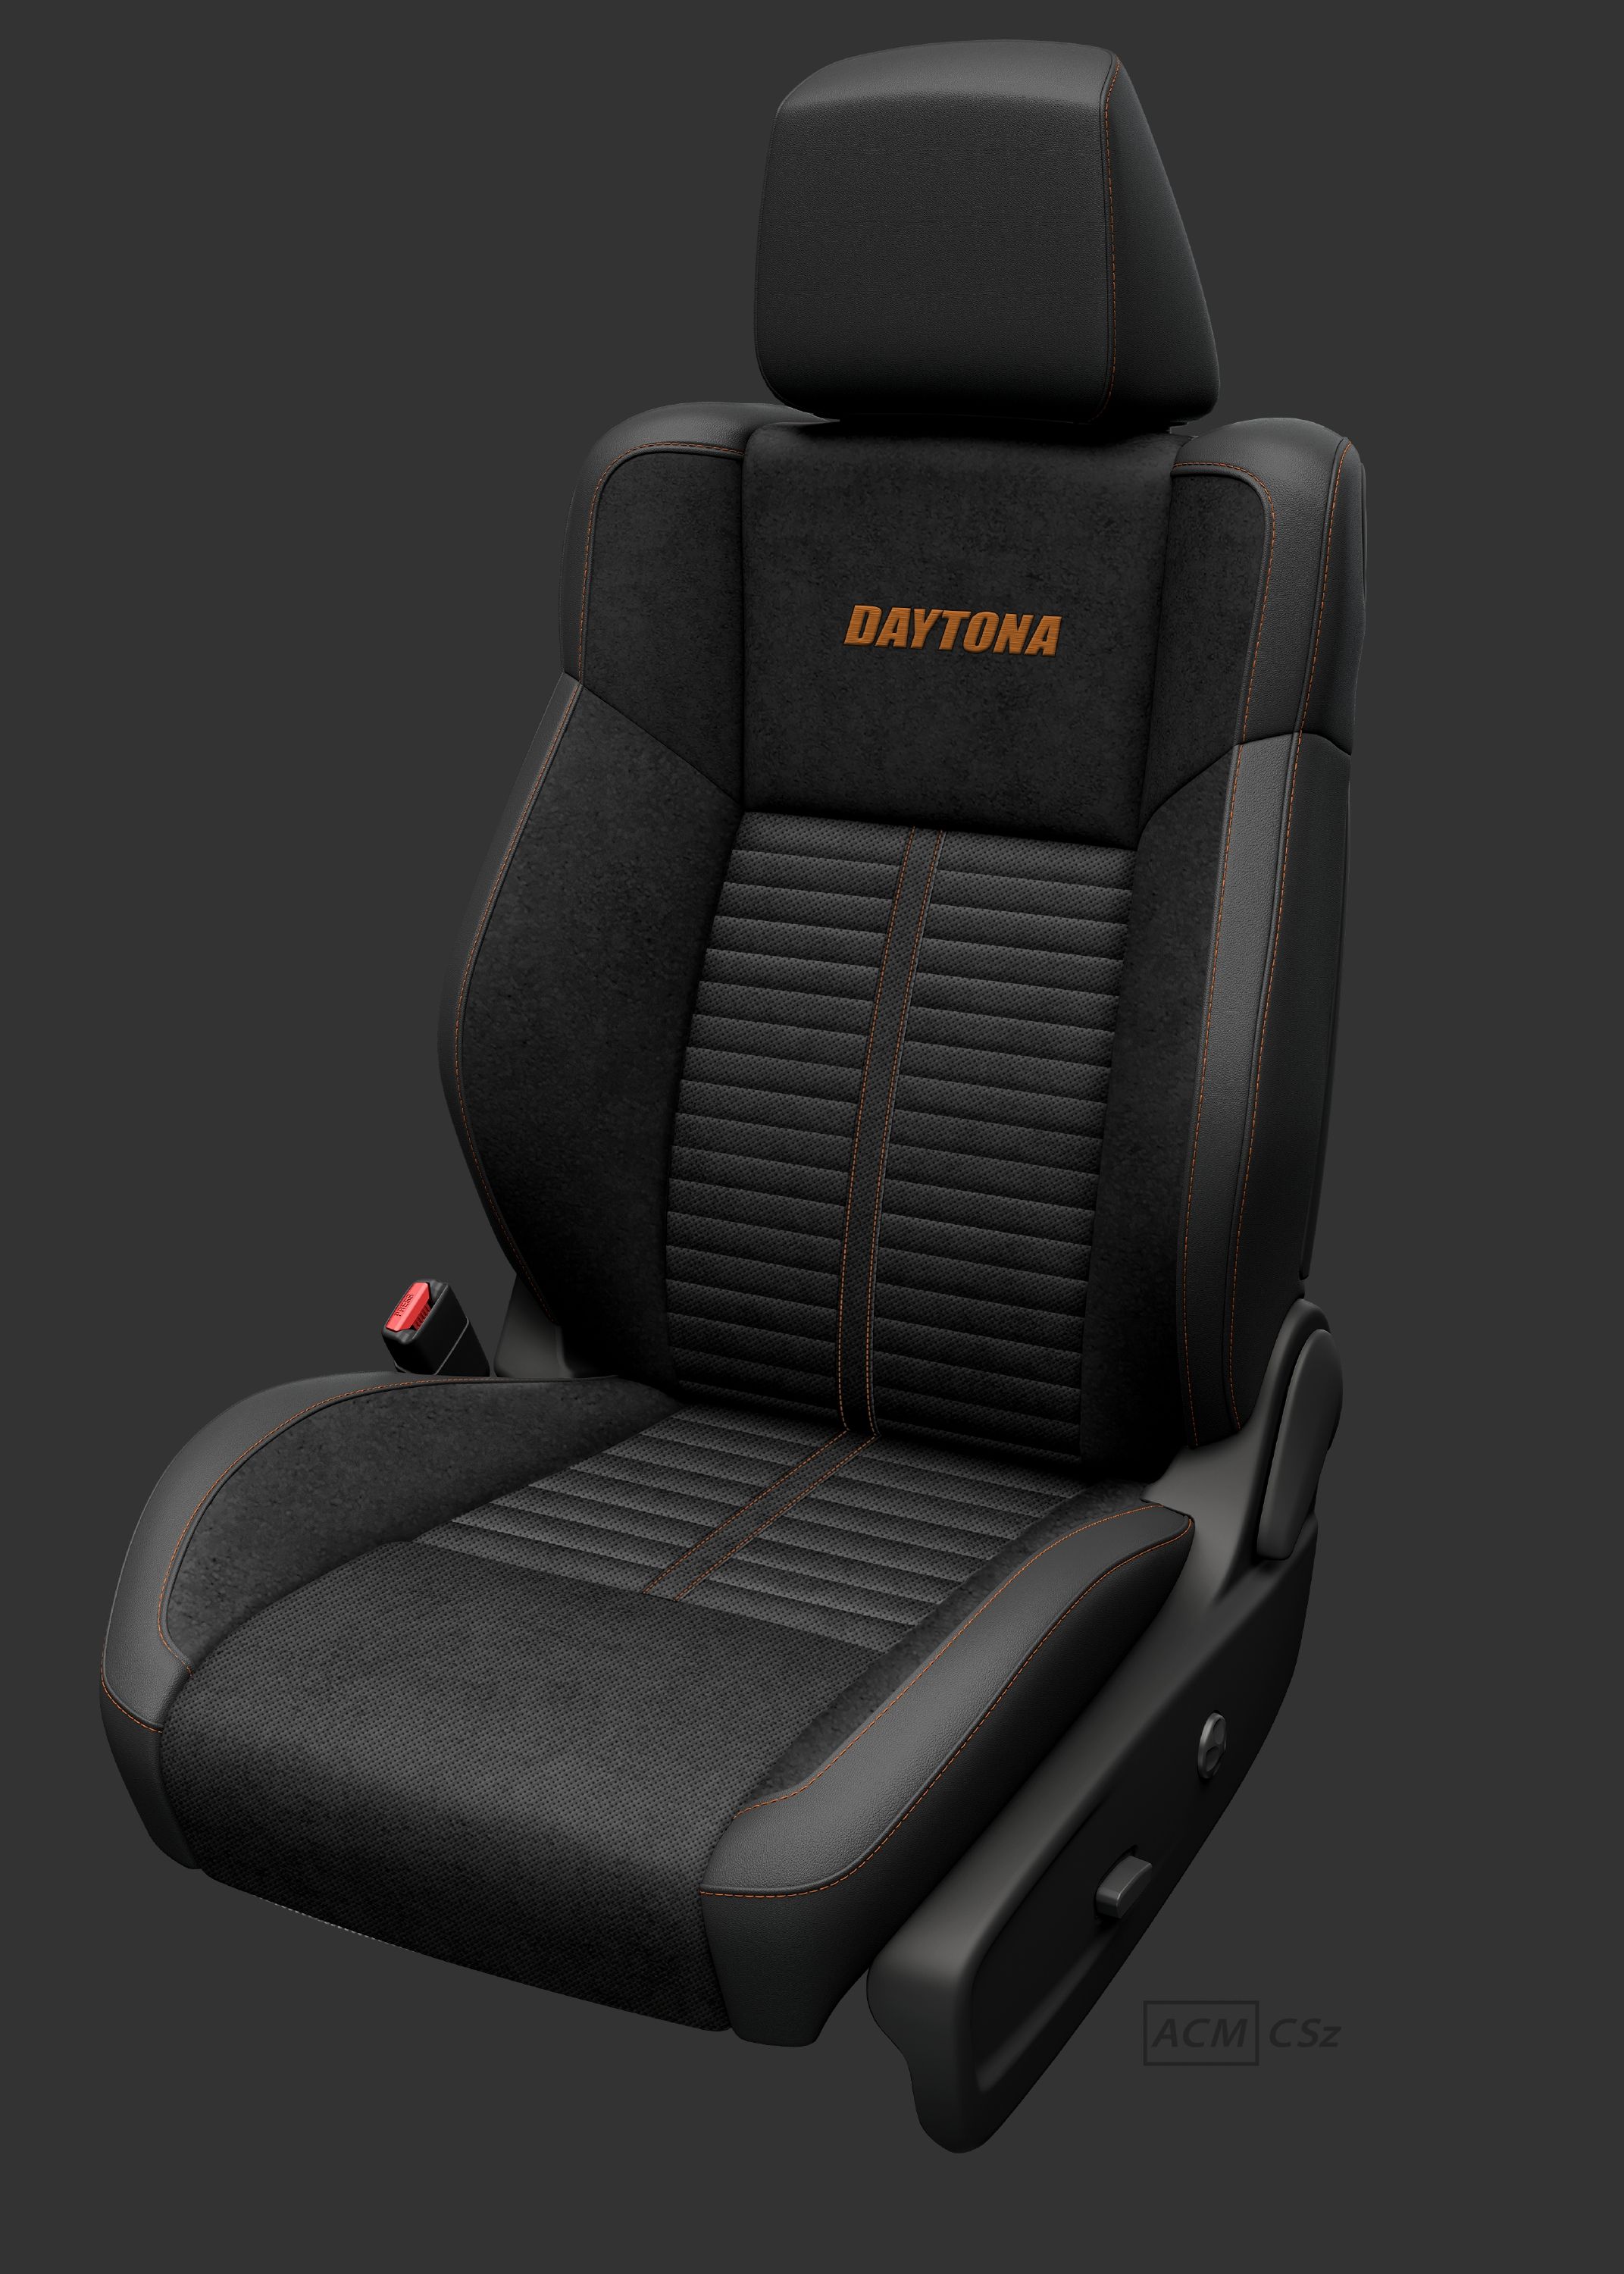 King Daytona seat